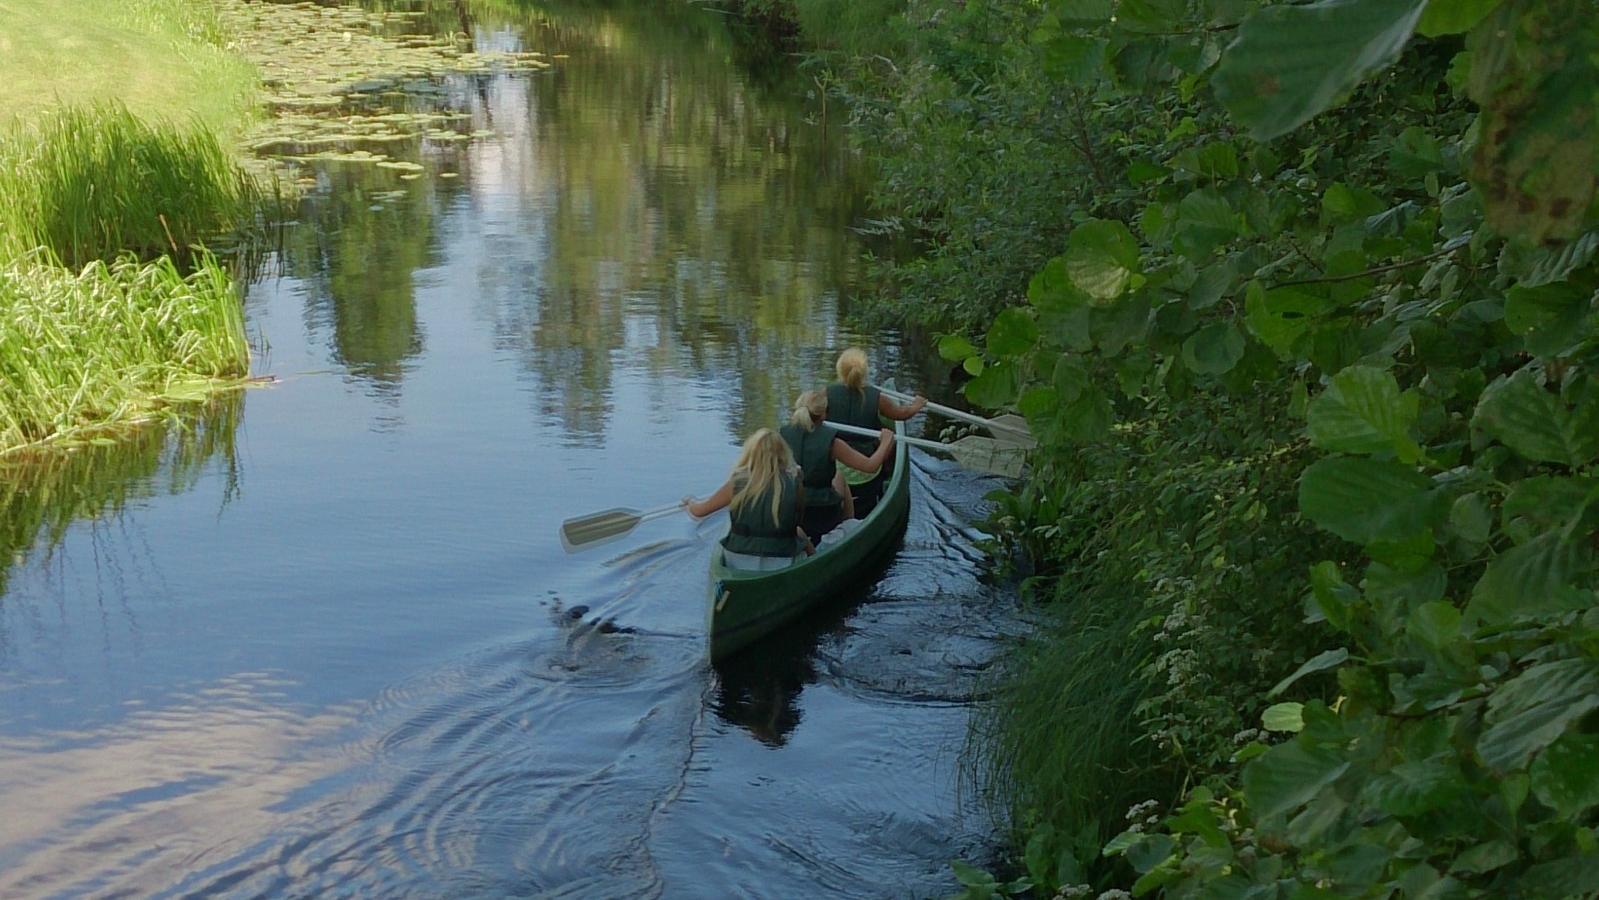 Kanuu.ee kanoottiretki perheelle 4 hengen turvallisella kanootilla Audrun joella